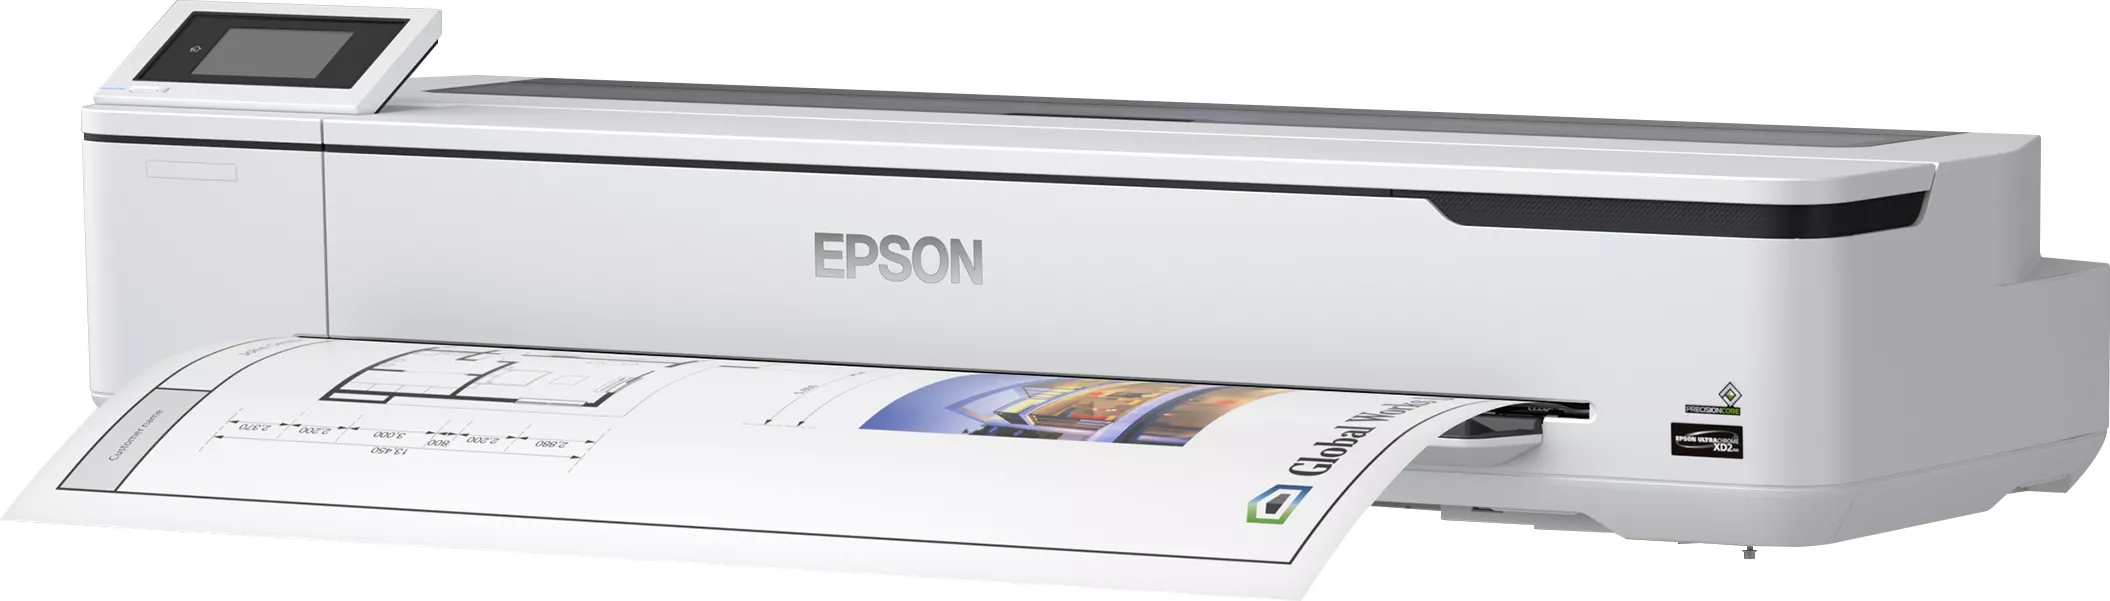 Vente EPSON SureColor SC-T5100N no stand 36inch Epson au meilleur prix - visuel 2